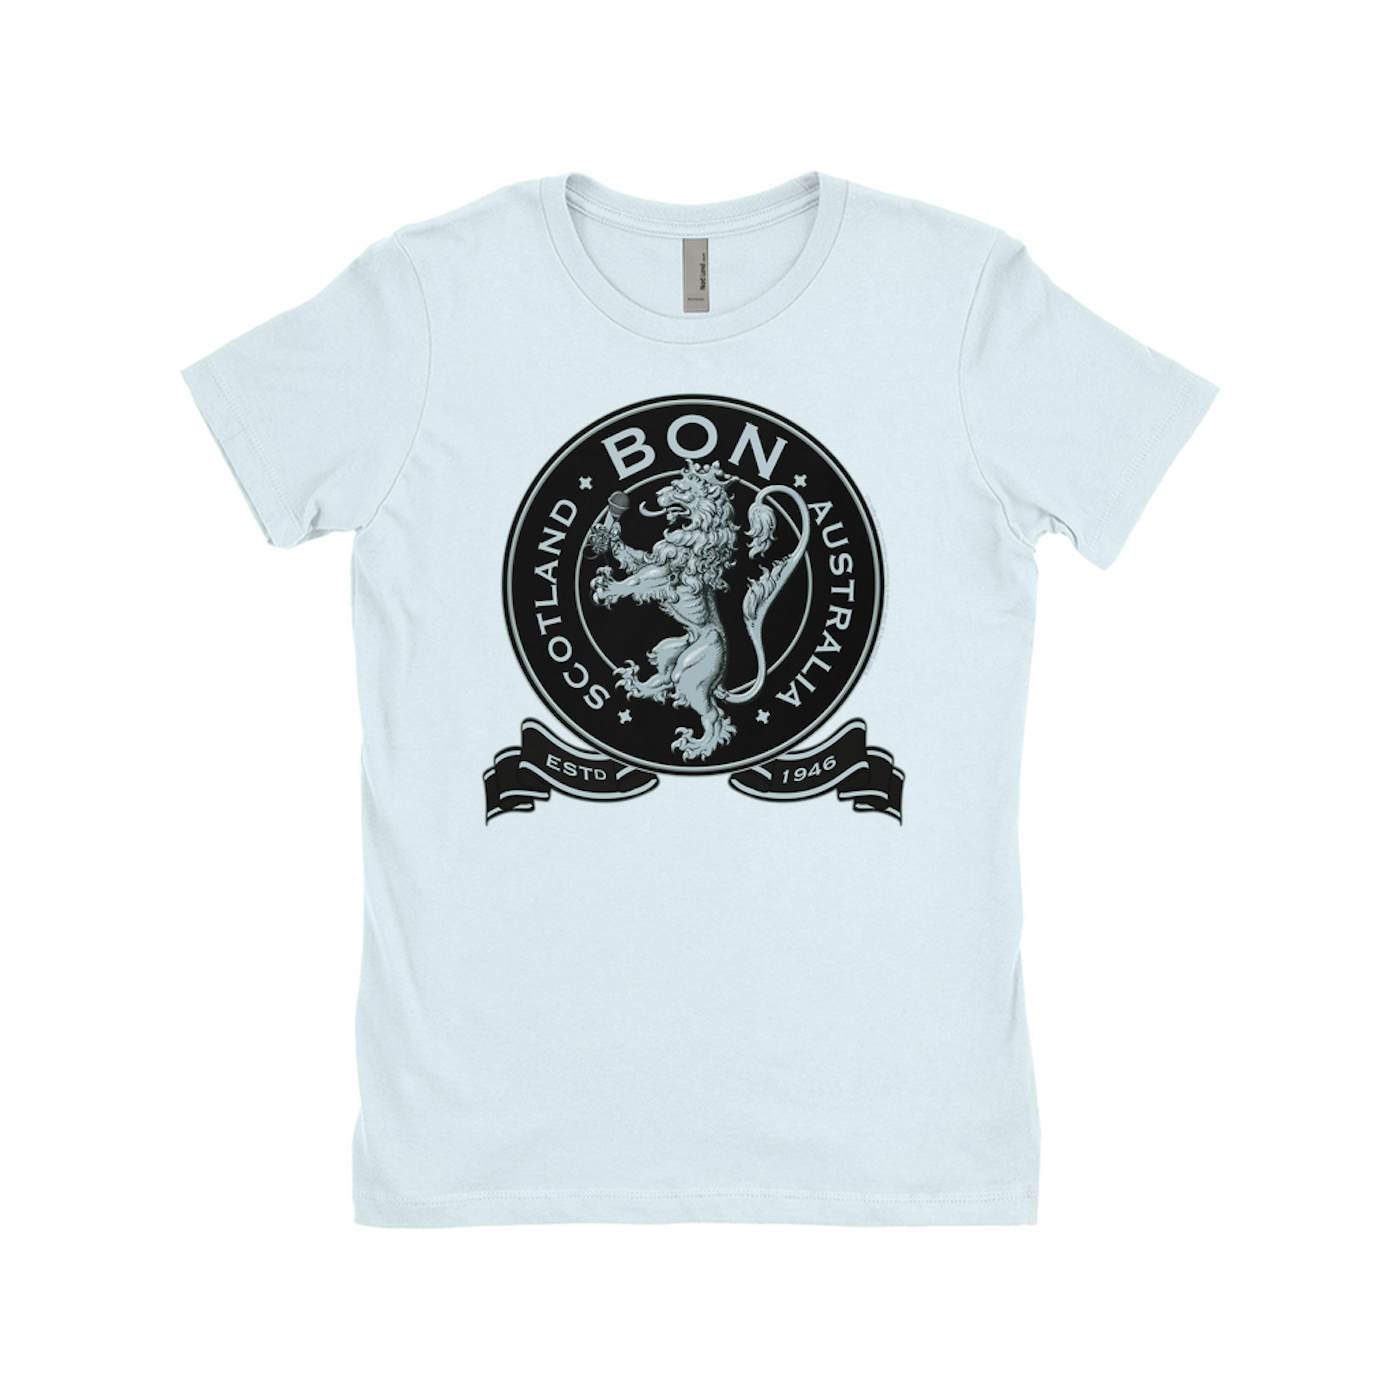 Bon Scott Ladies' Boyfriend T-Shirt | Bon Scotland Australia Est 1946 Bon Scott Shirt